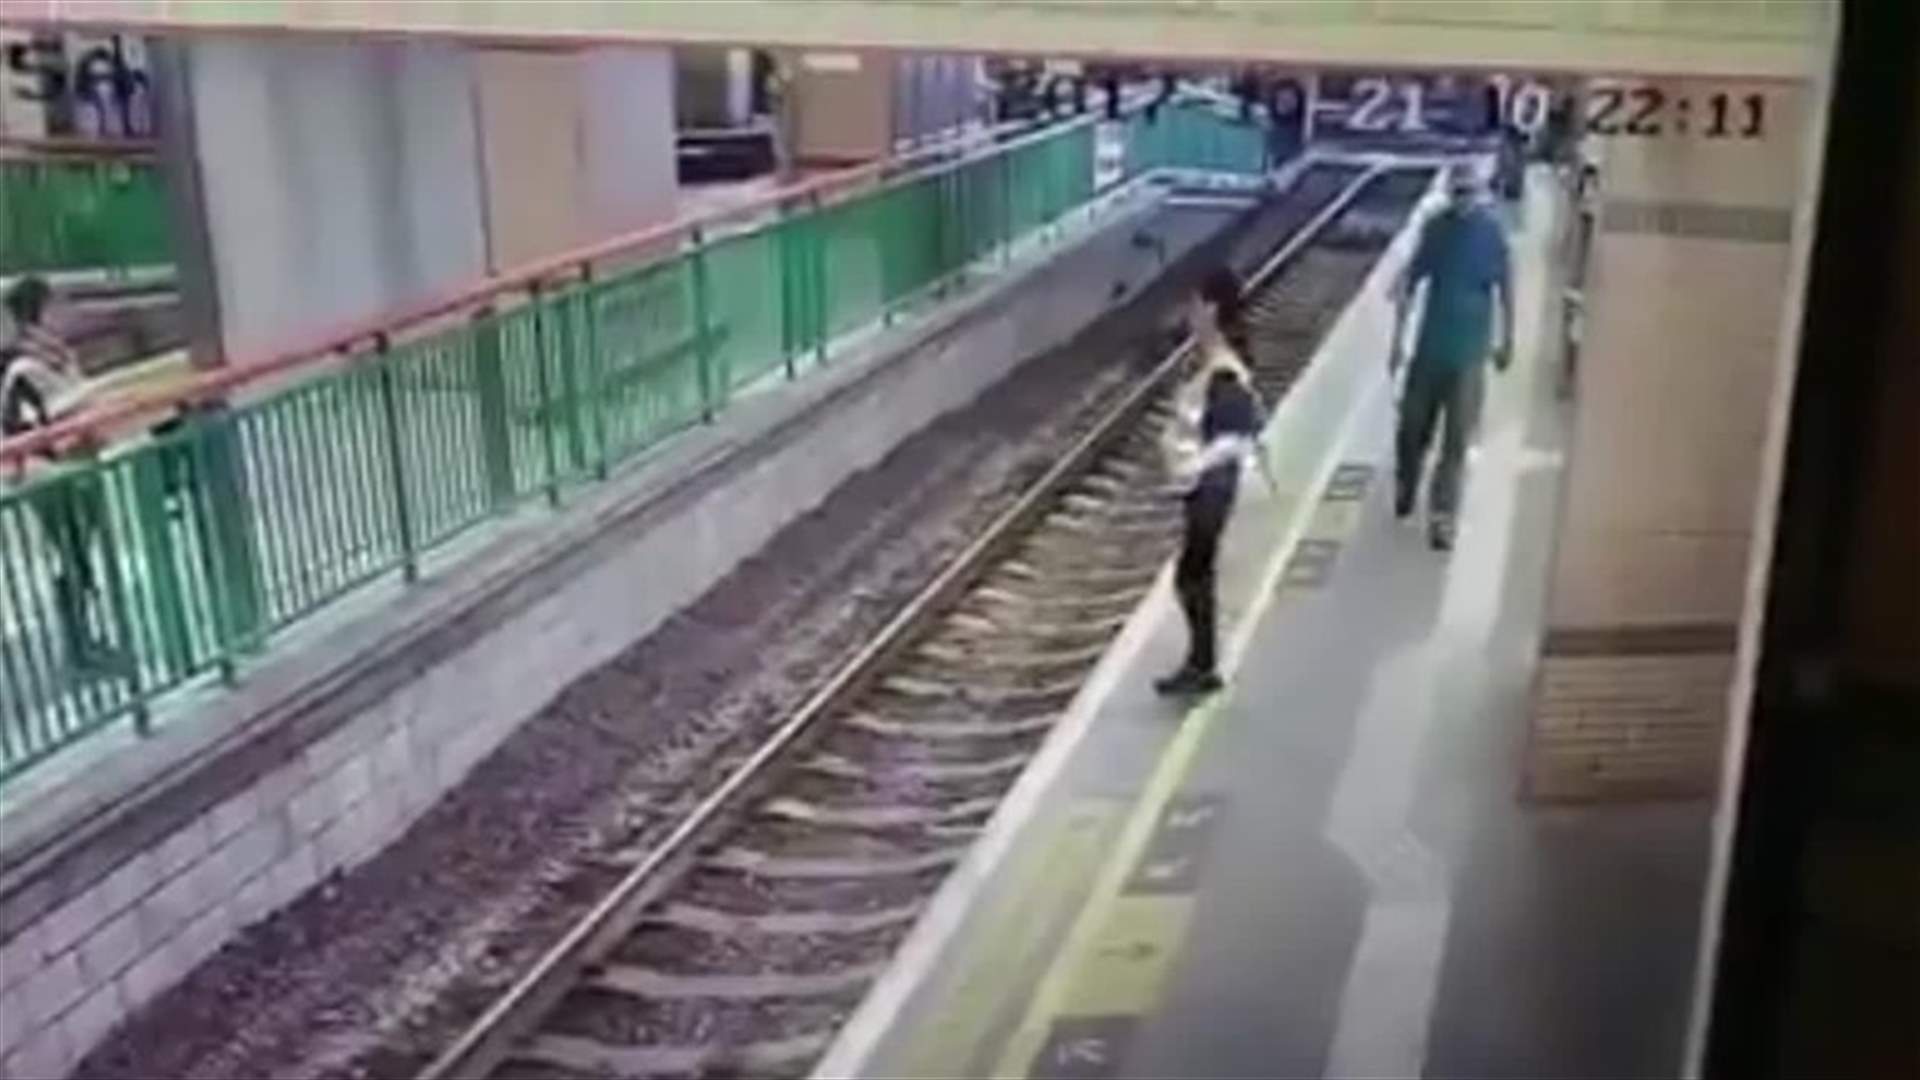 بالفيديو – دفعها على سكة القطار من دون أيّ رحمة... إليكم ما حصل معها!